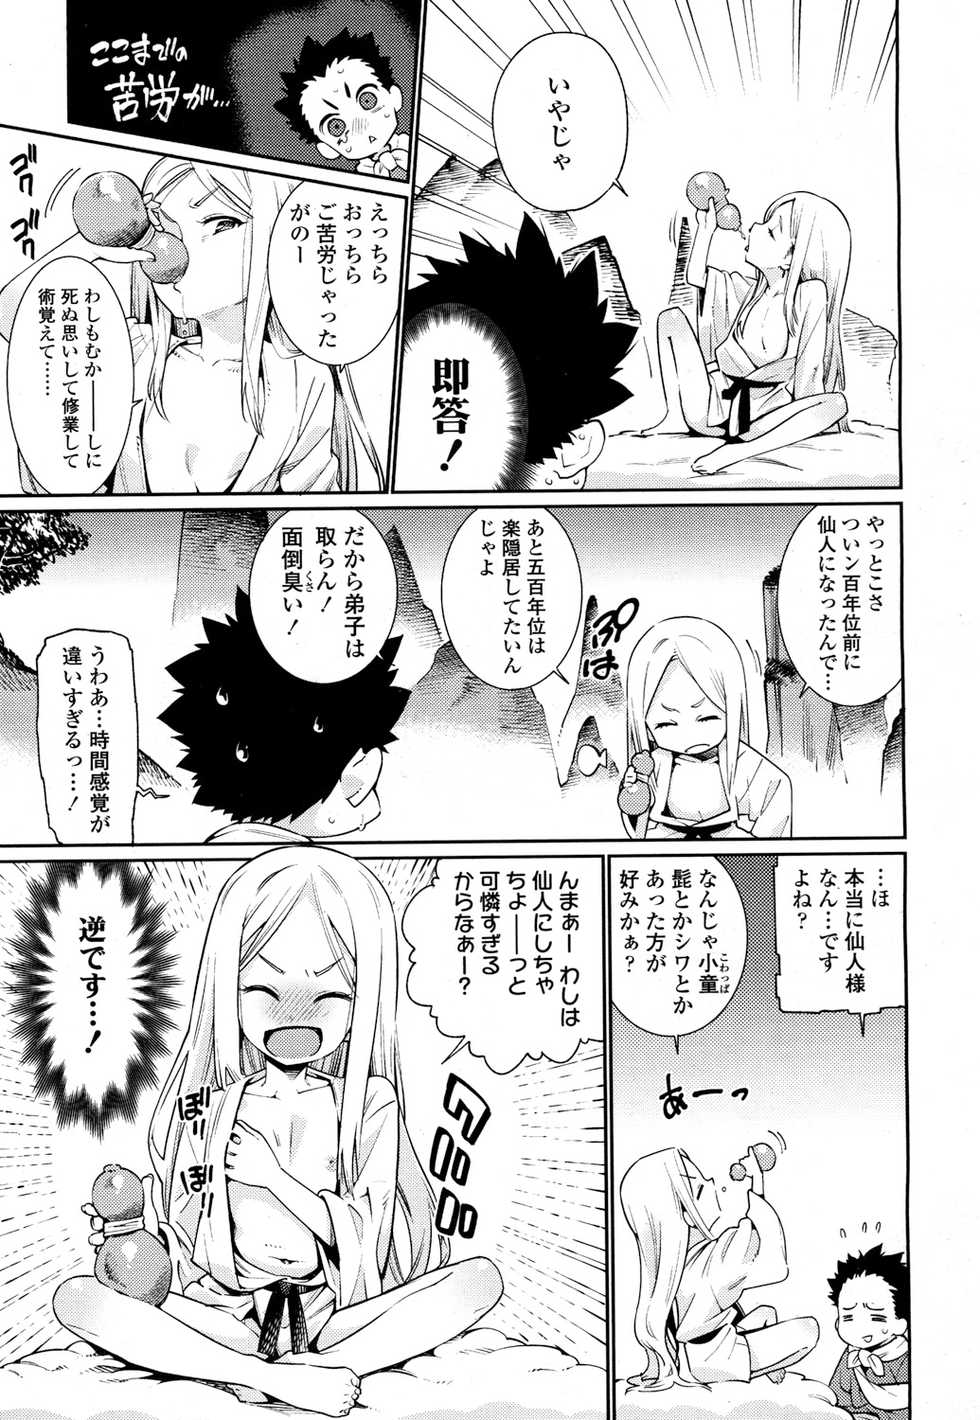 Towako 2 [Digital] - Page 22